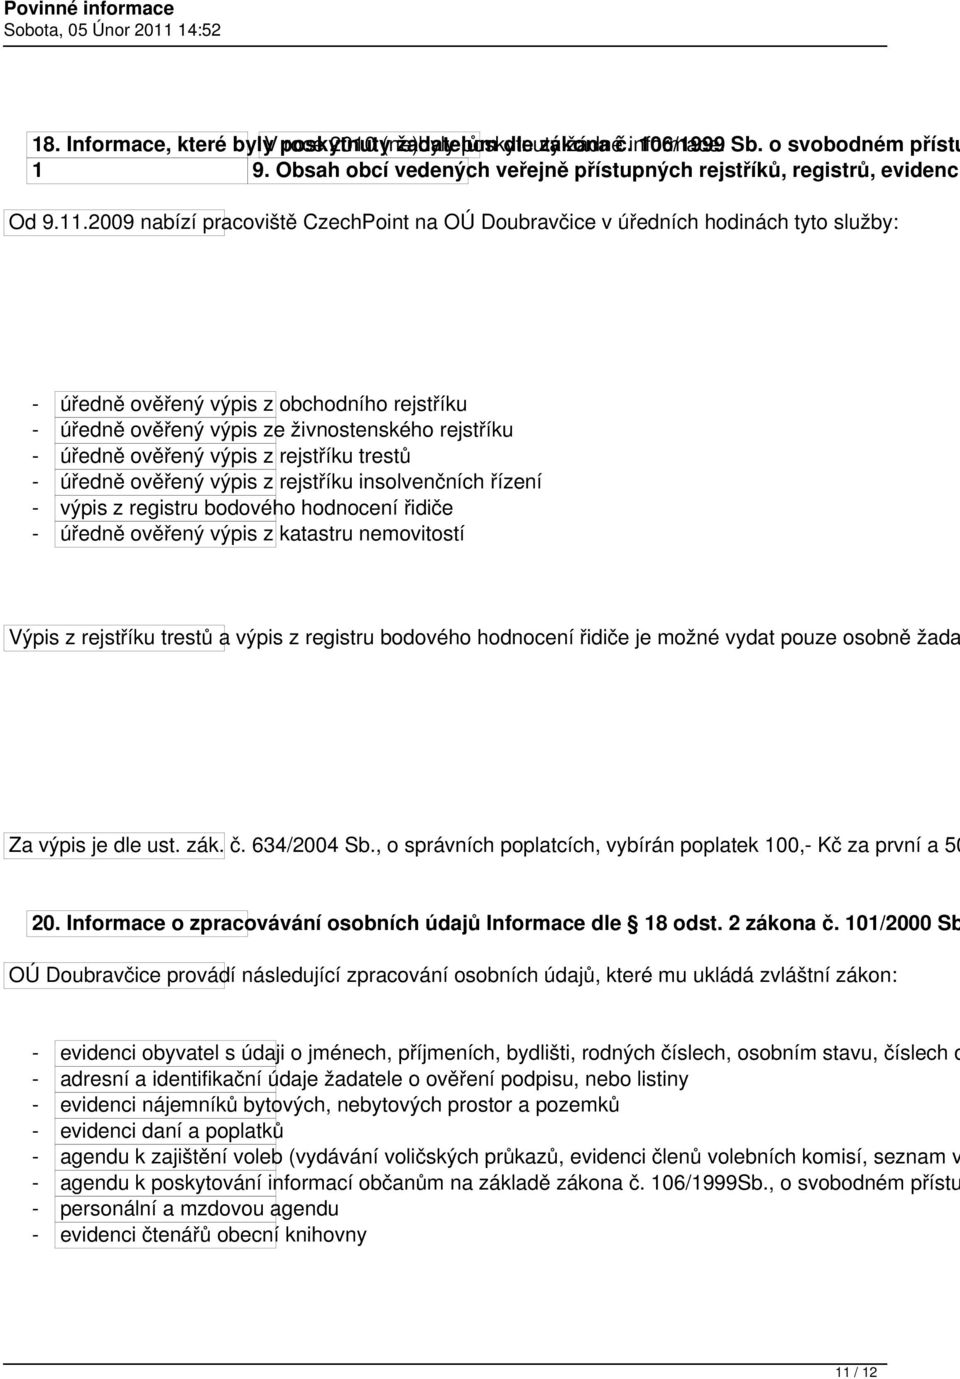 2009 nabízí pracoviště CzechPoint na OÚ Doubravčice v úředních hodinách tyto služby: - úředně ověřený výpis z obchodního rejstříku - úředně ověřený výpis ze živnostenského rejstříku - úředně ověřený